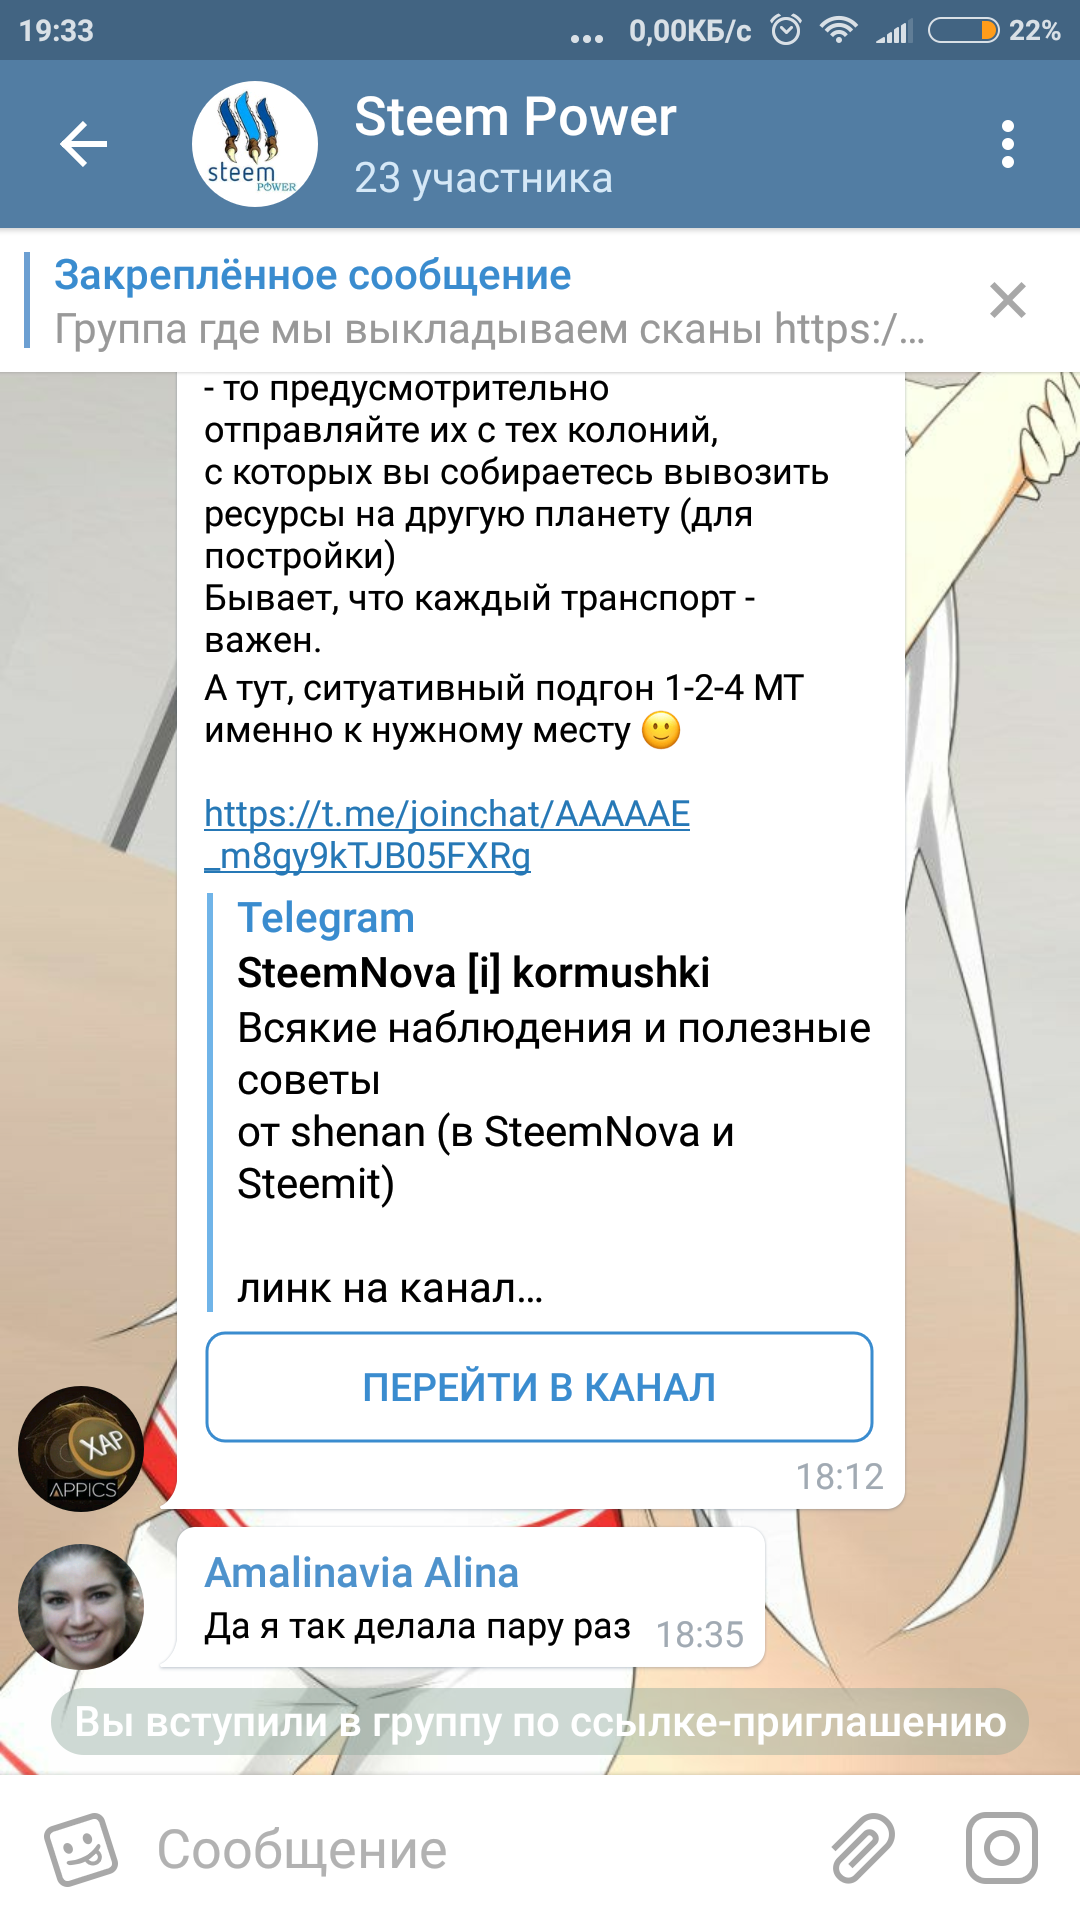 Screenshot_2018-04-24-19-33-07-179_org.telegram.messenger.png